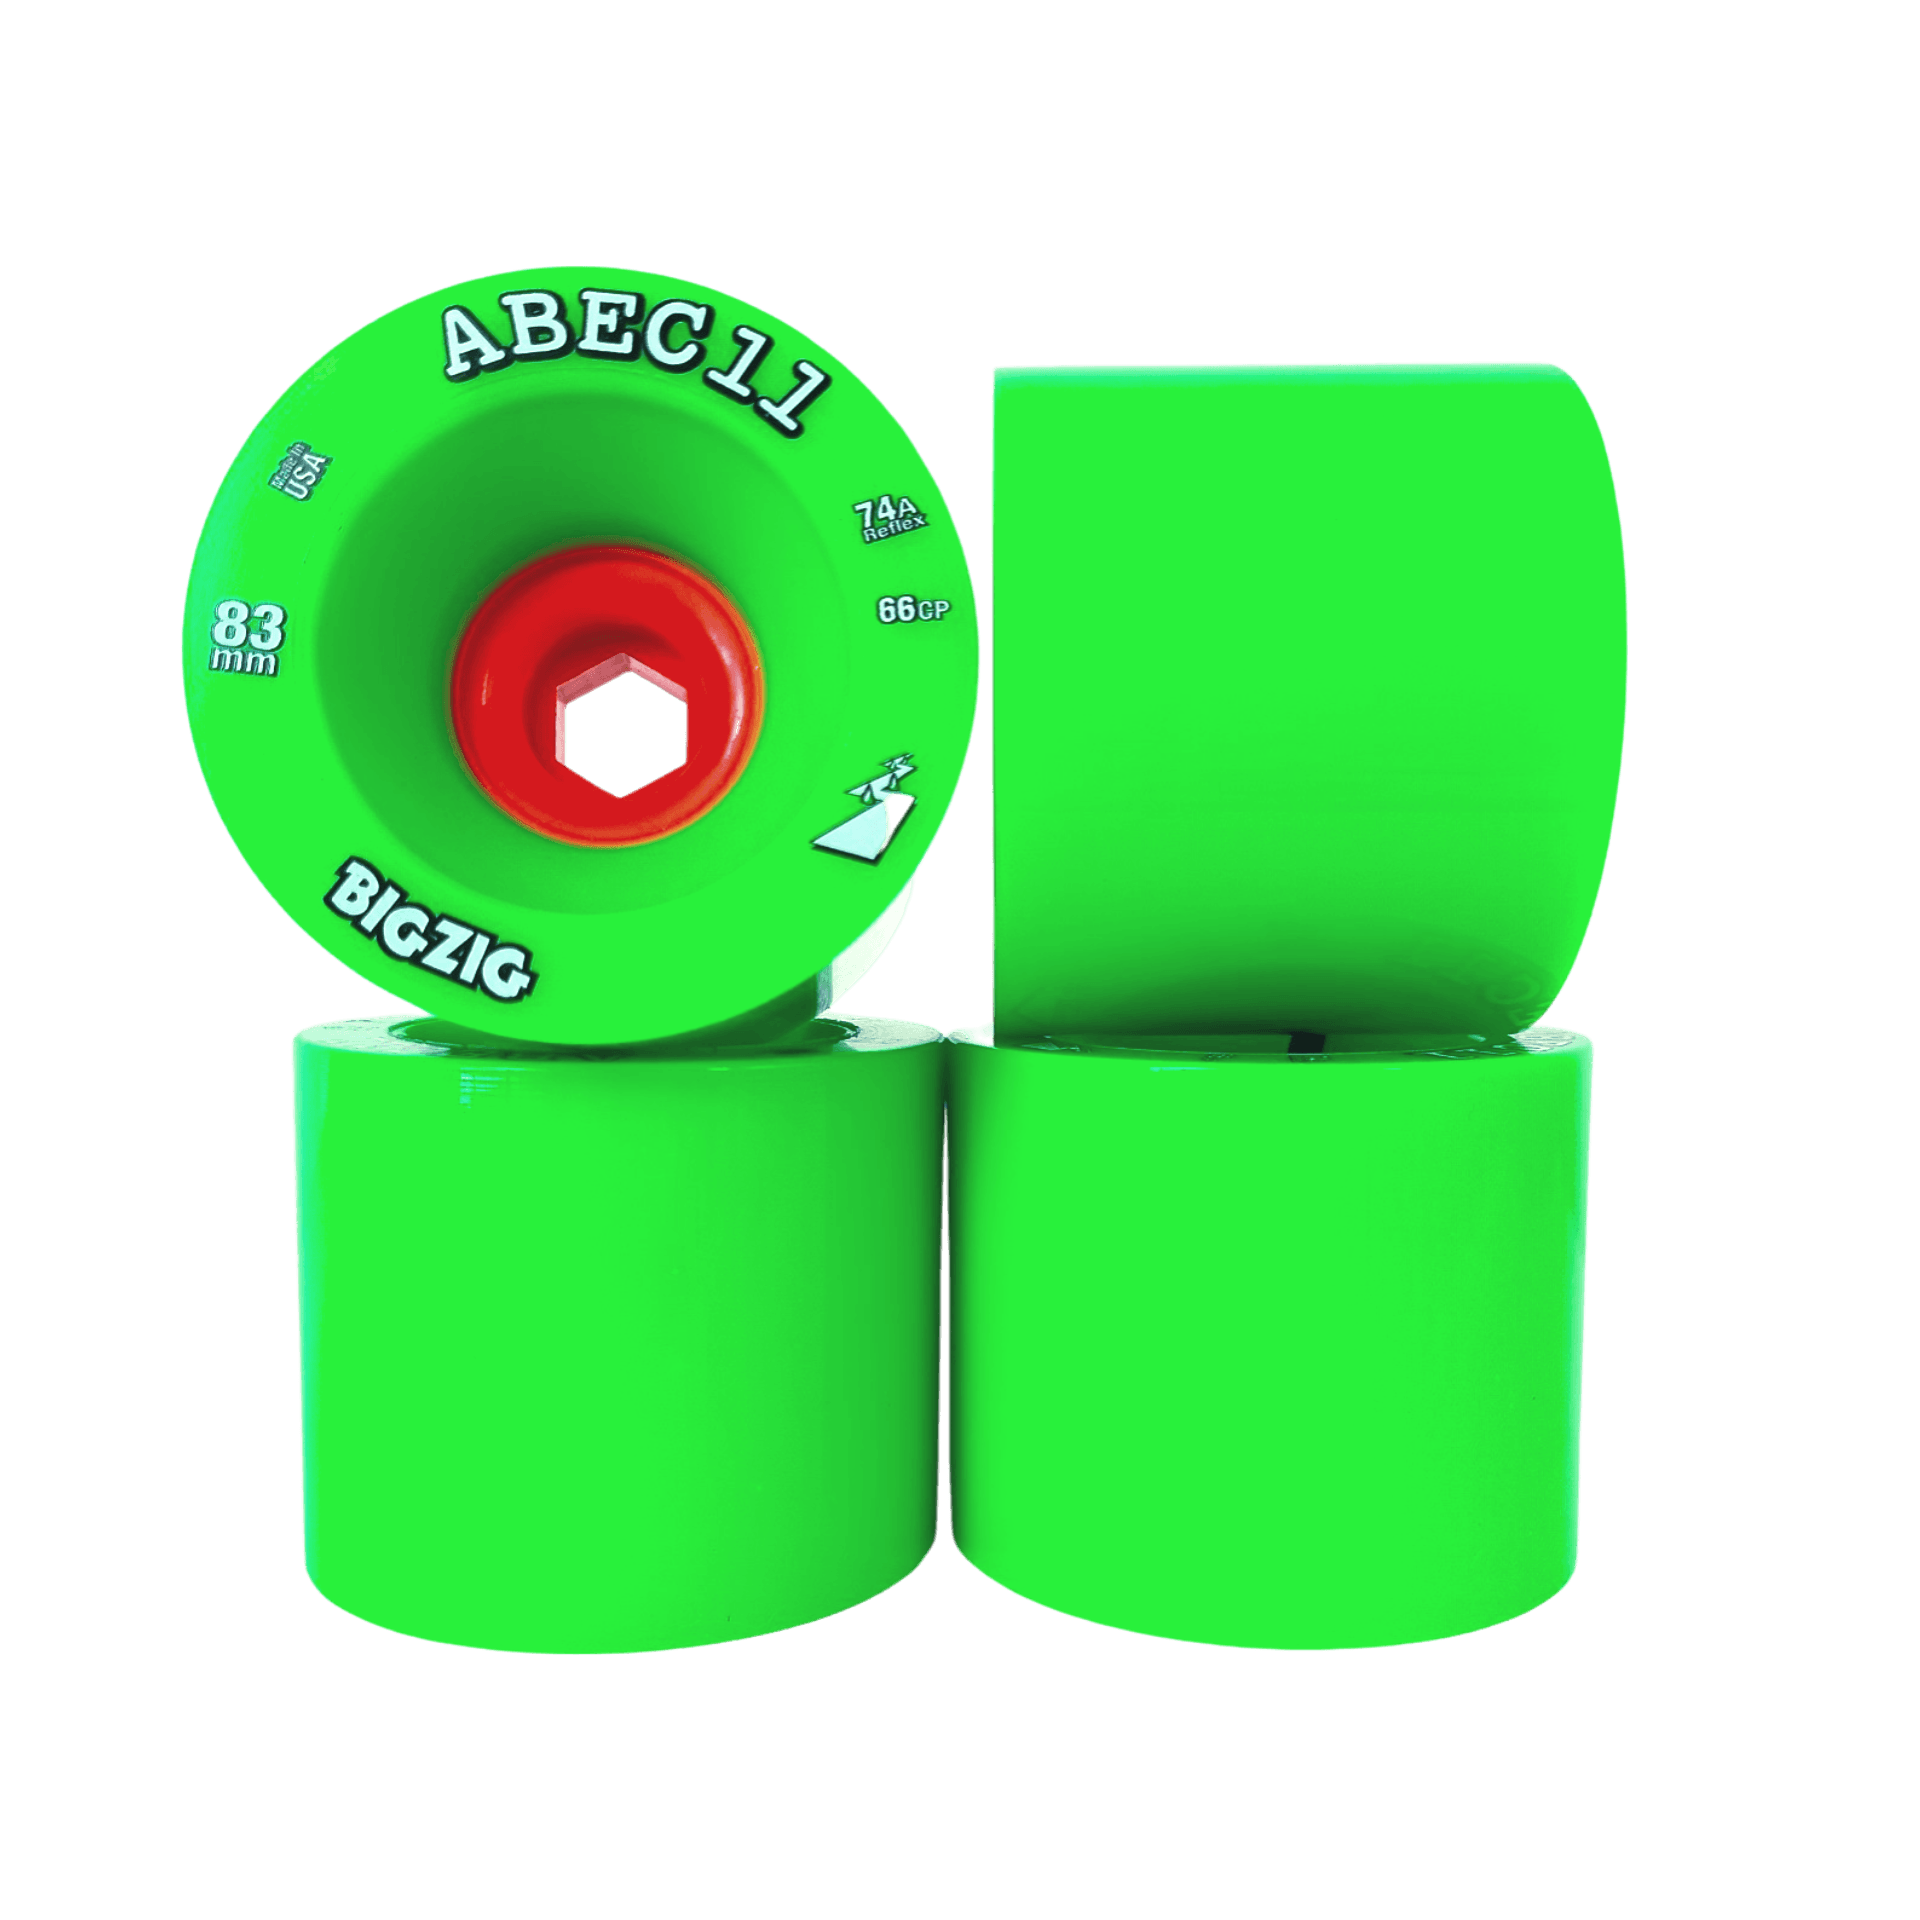 ABEC11: 83mm BigZig Longboard Skateboard Wheel - Motion Boardshop